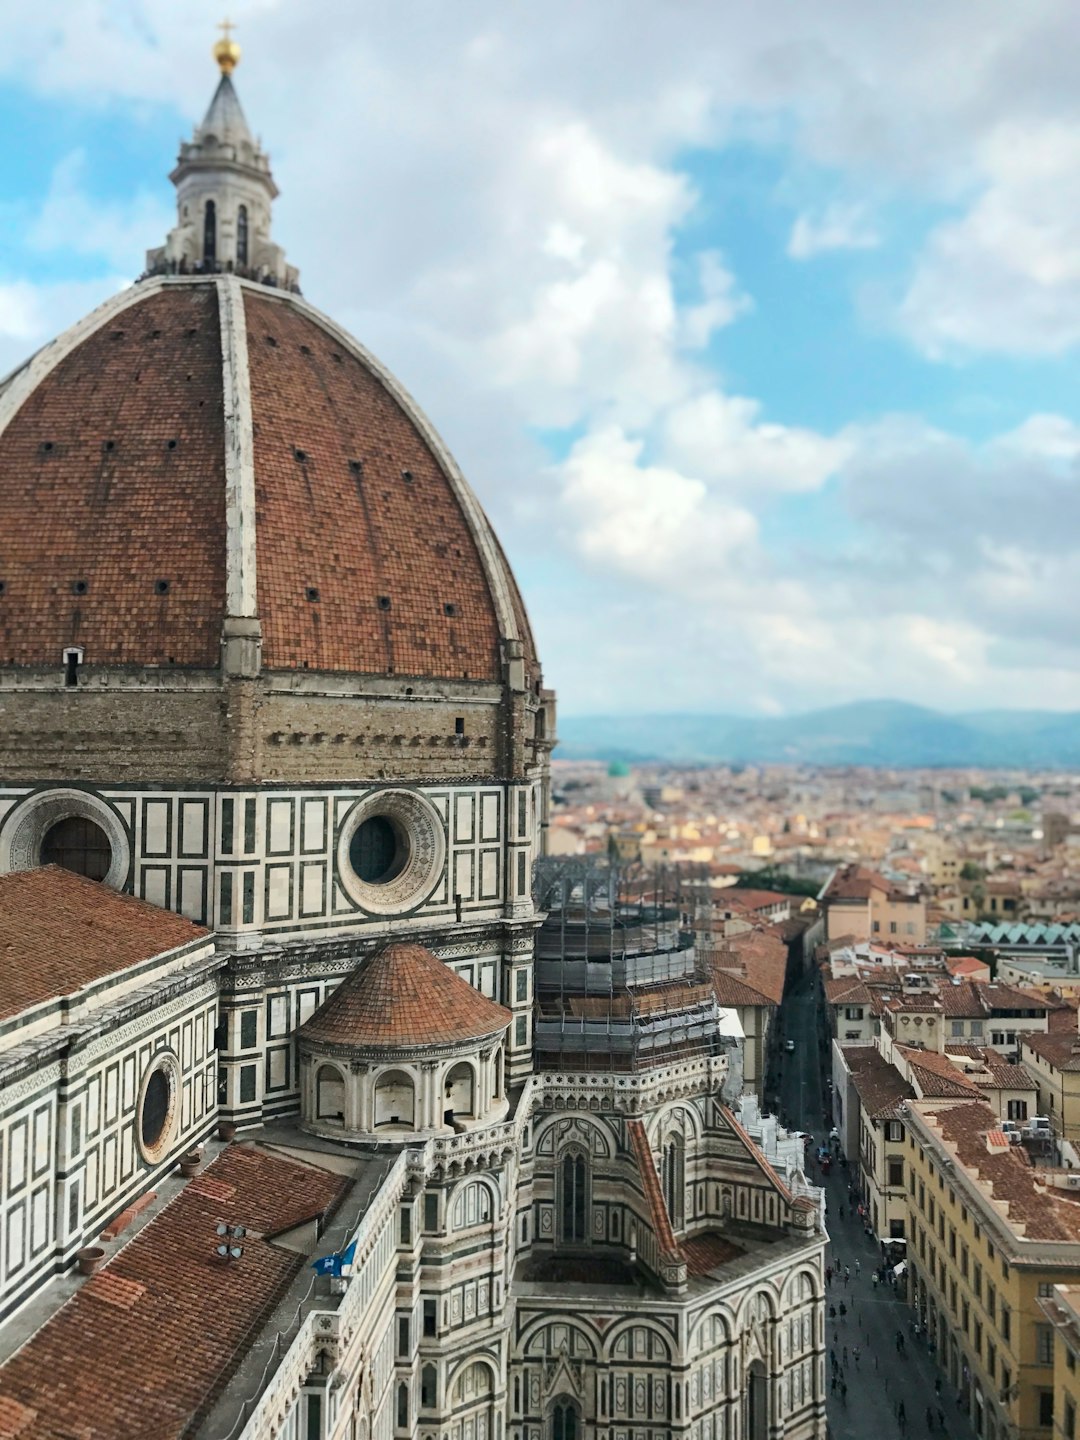 Campanile de Giotto, Florence, Italy